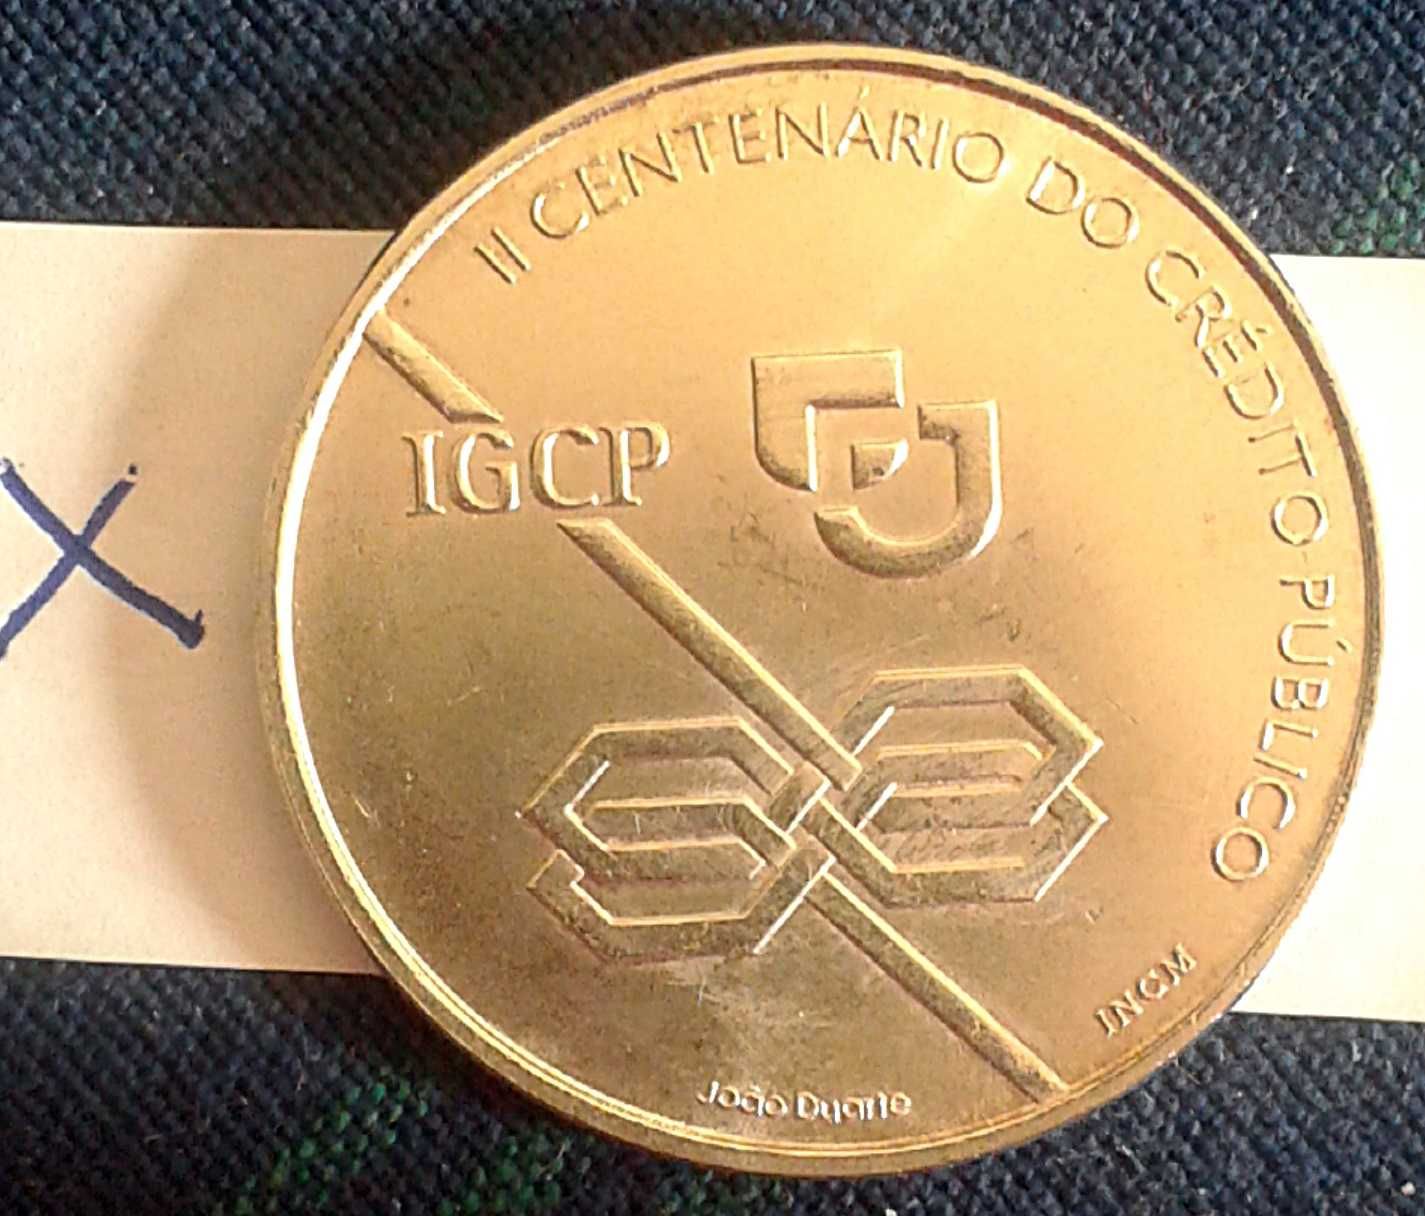 1000$ Moeda PRATA CREDITO PUBLICO IGCP. 1997 SILVER coin Portugal